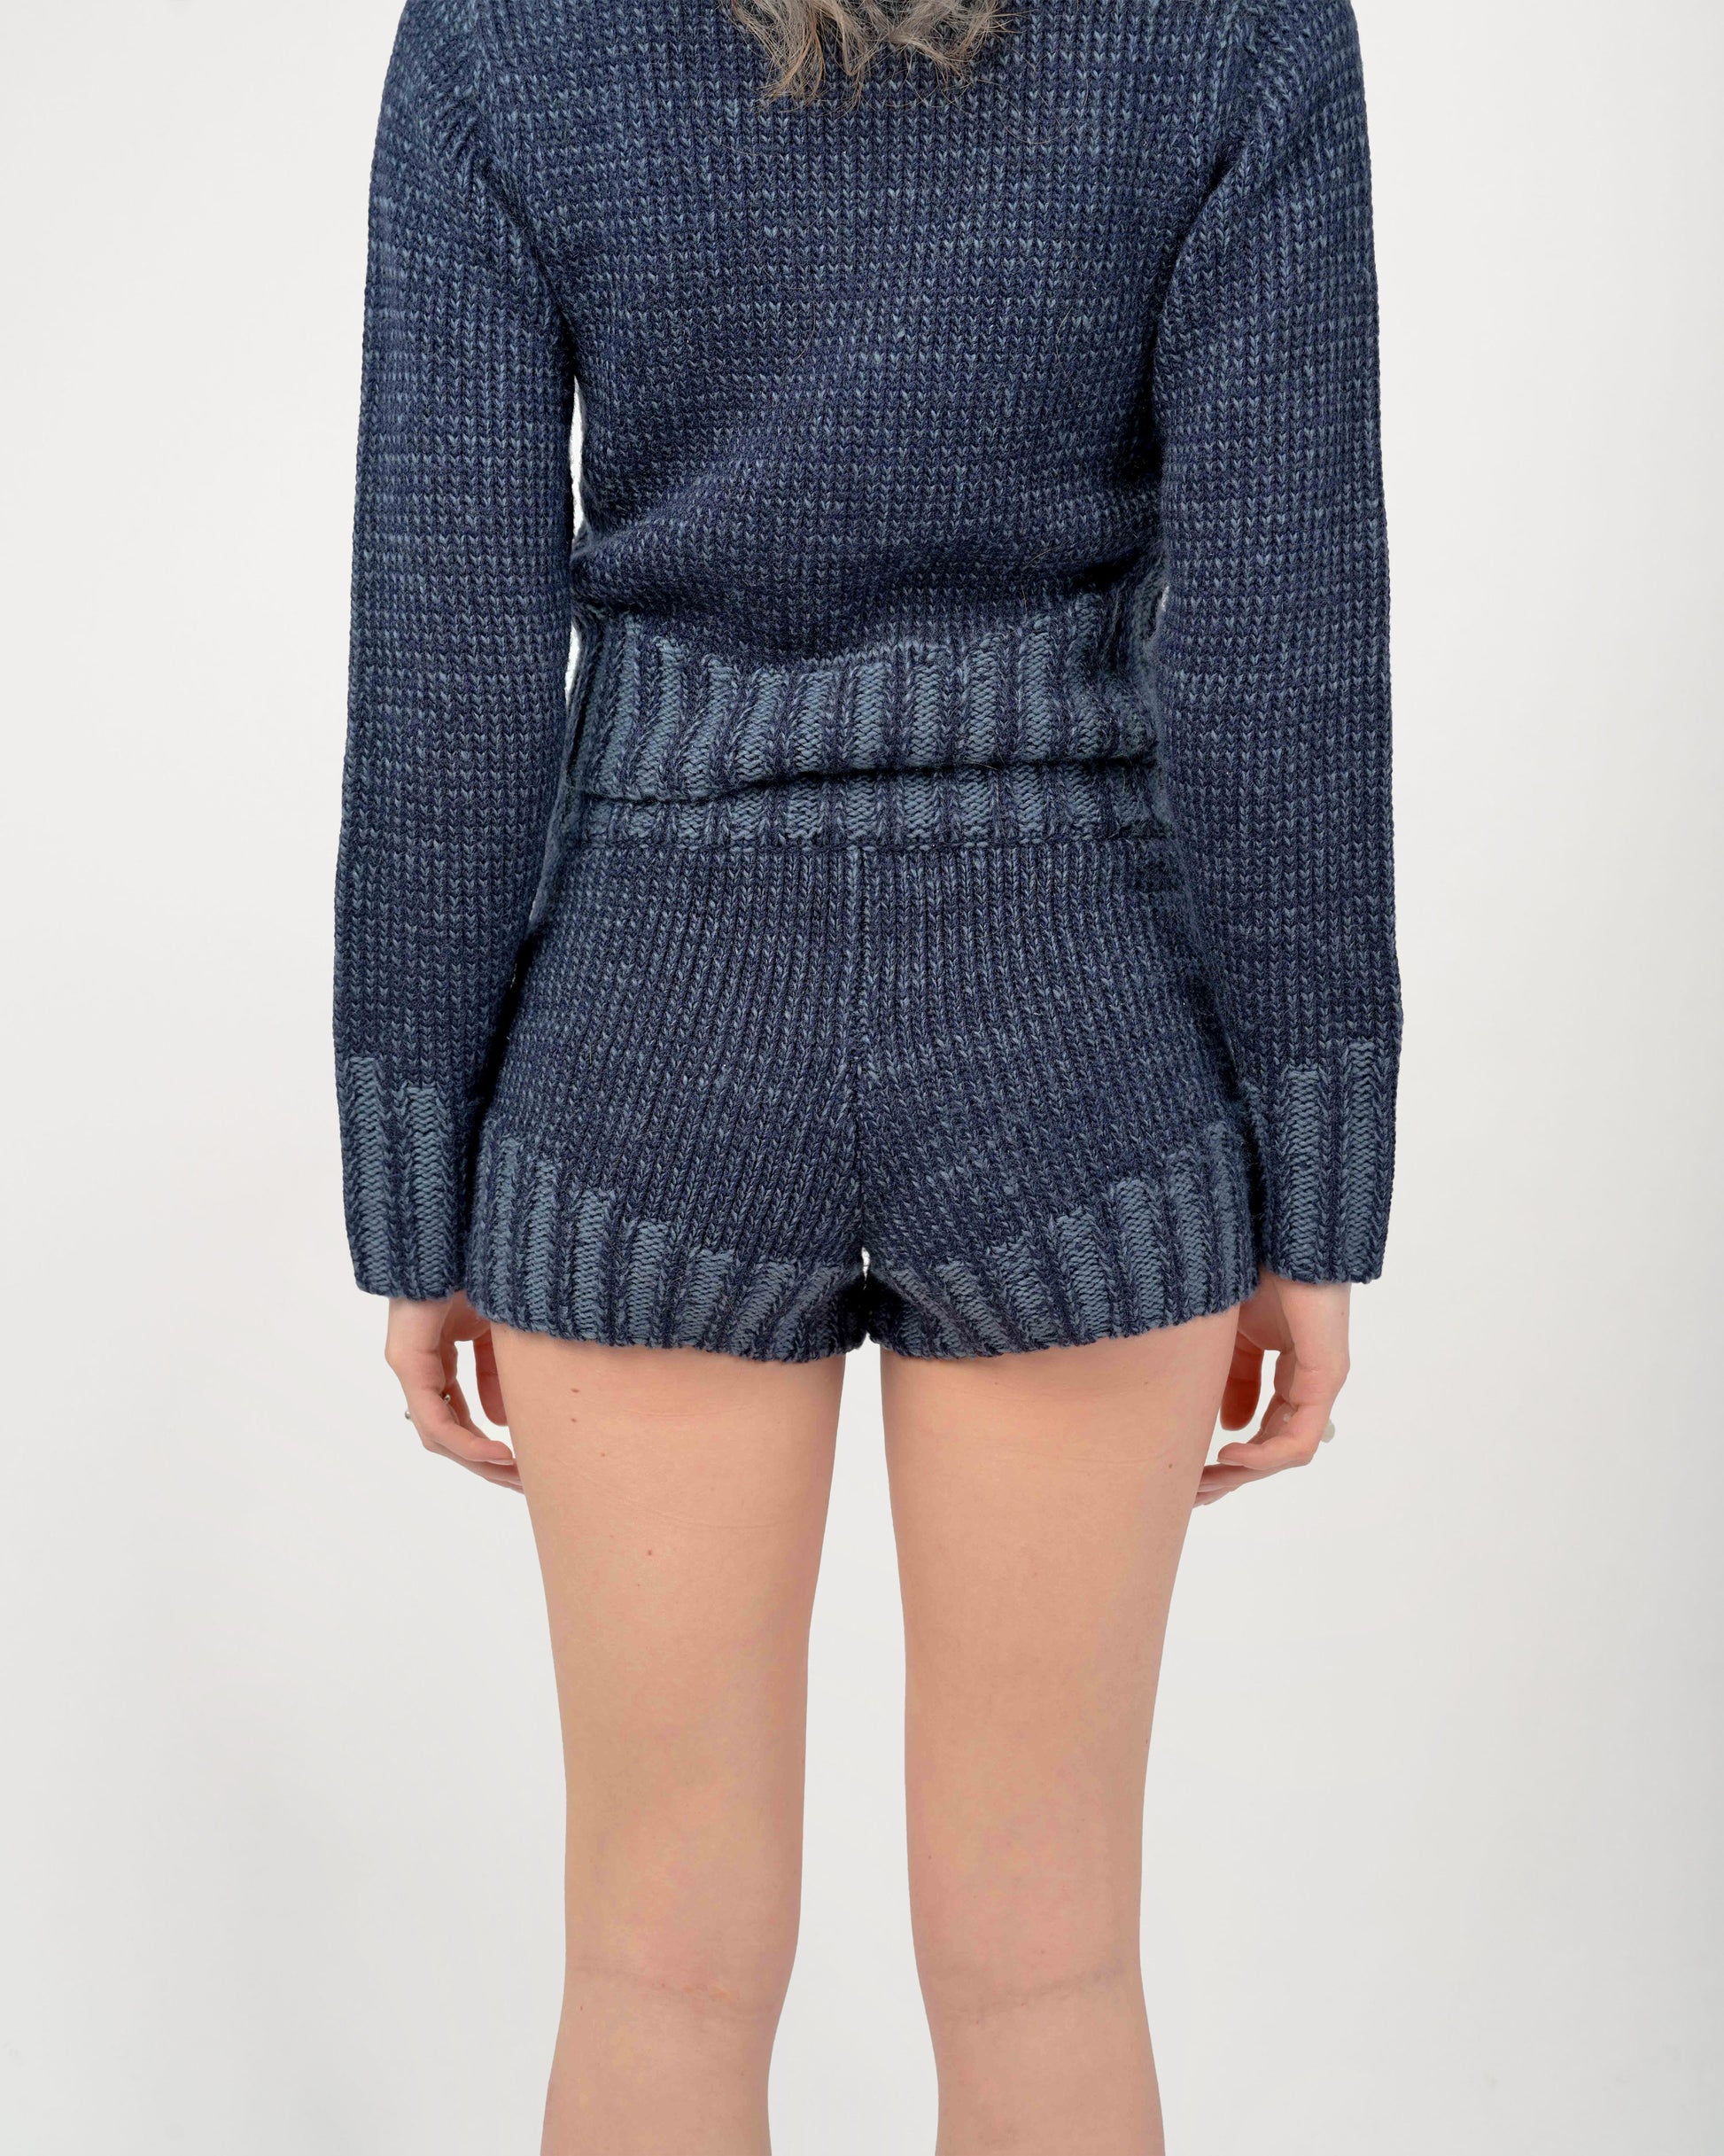 Back View of Zaya Knit Shorts Set in Denim Navy Blue by Aseye Studio